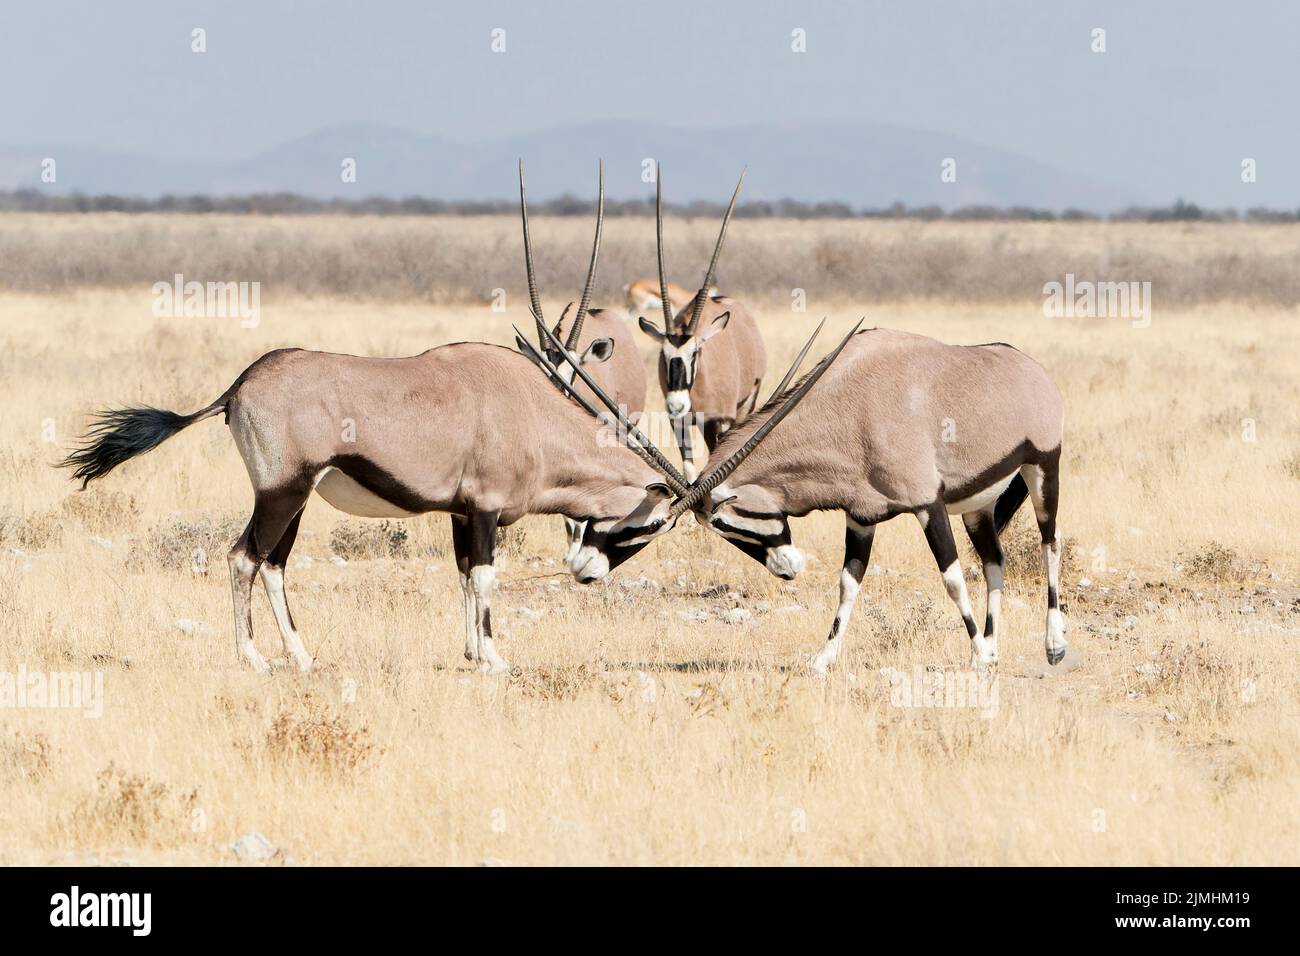 gemsbok ou oryx d'Afrique du Sud, Oryx gazella, deux adultes luttant dans une végétation réduite, Parc national d'Etosha, Namibie Banque D'Images